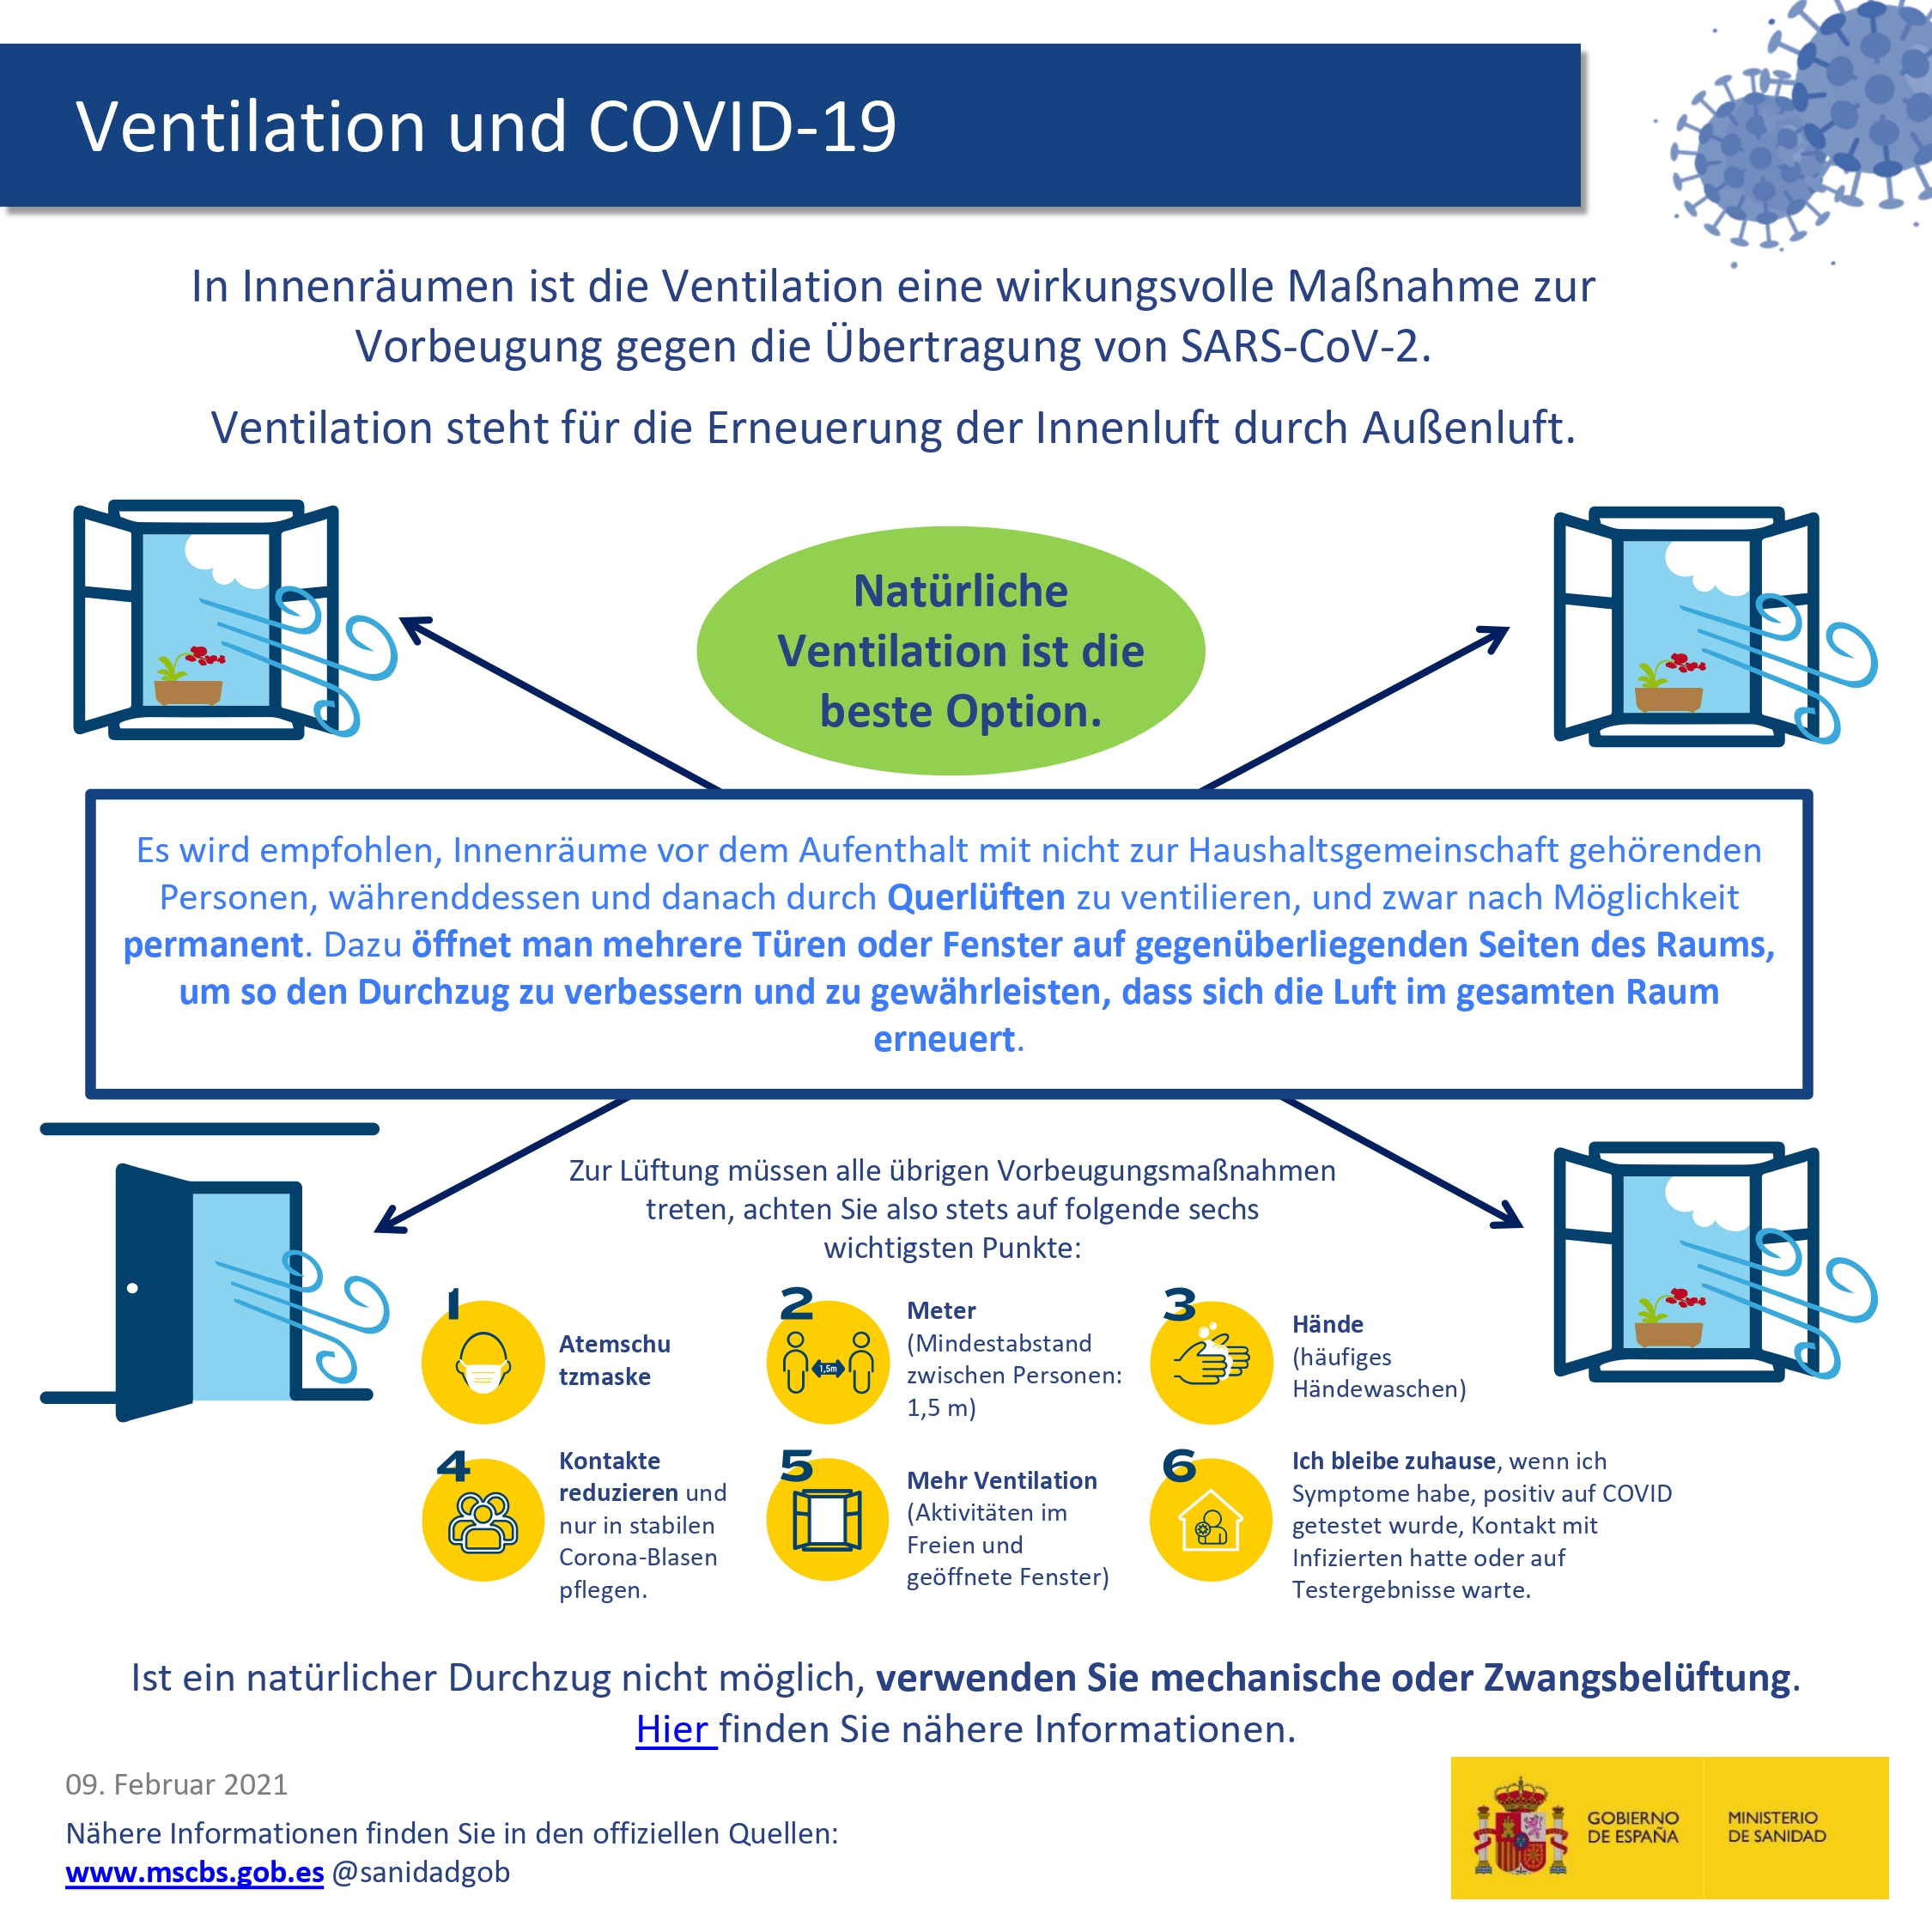 Ventilation und COVID-19